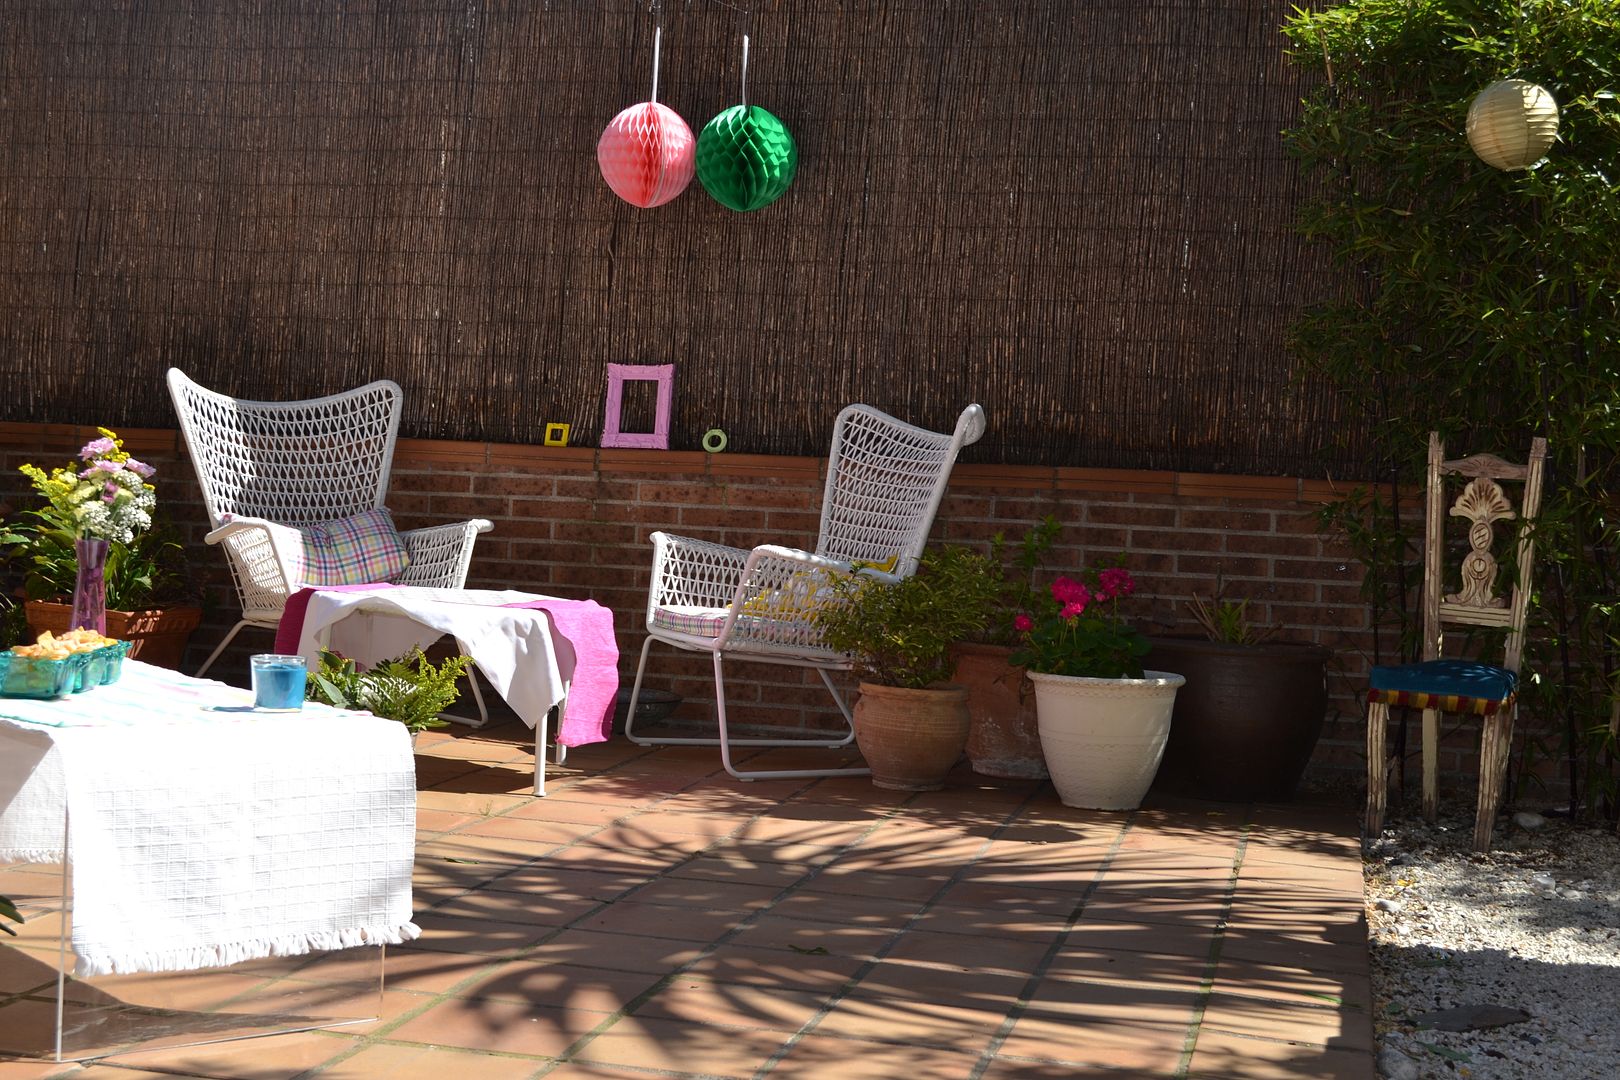  photo bautizo-terraza-buffet-casa-ideas-flores-colores6_zps2ded8441.jpg